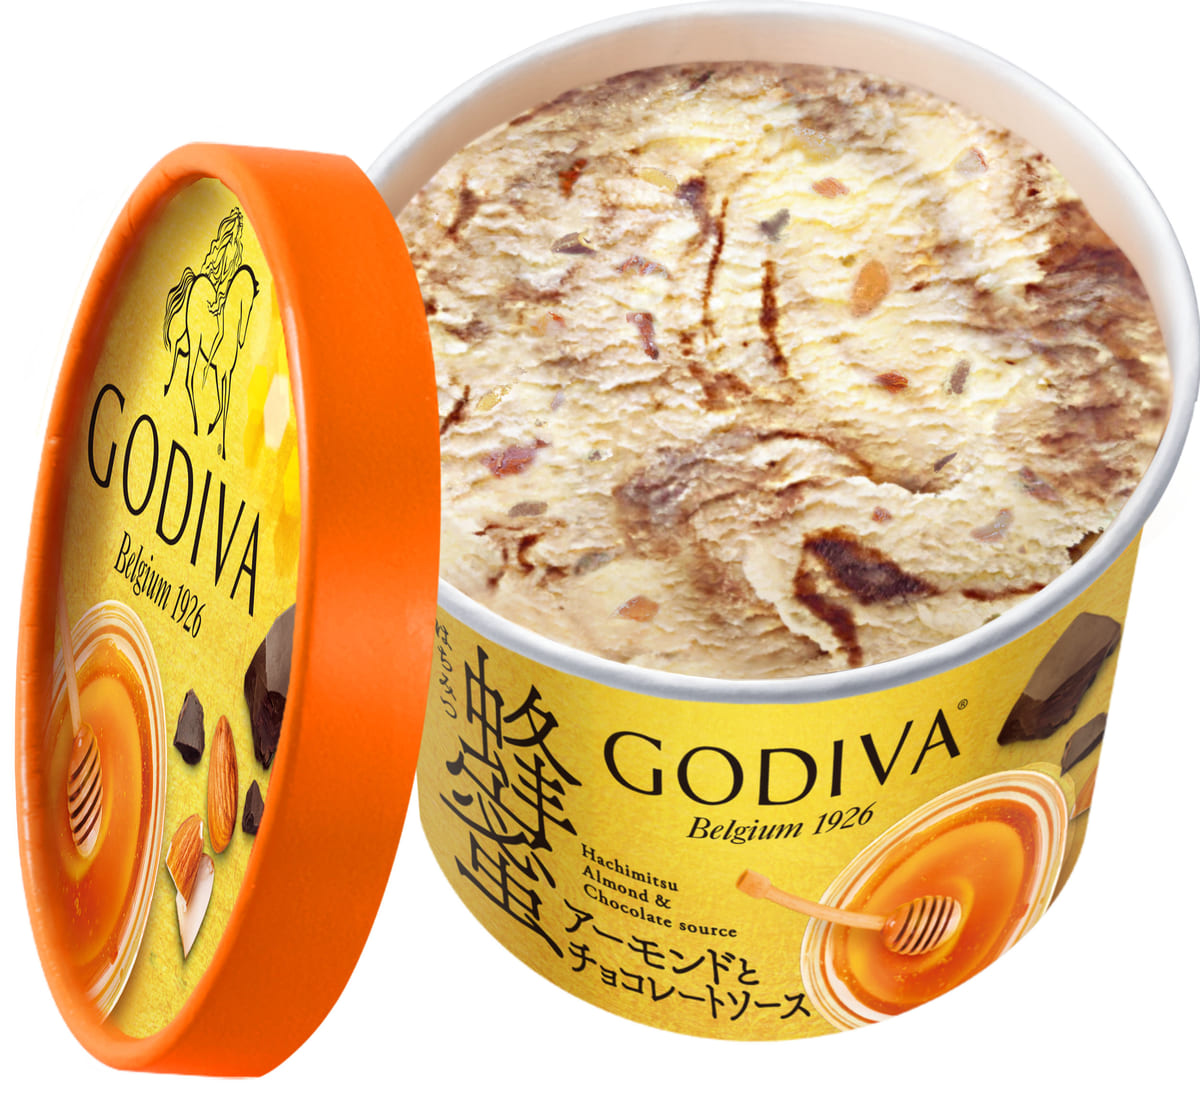 ゴディバ カップアイス 「蜂蜜アーモンドとチョコレートソース」